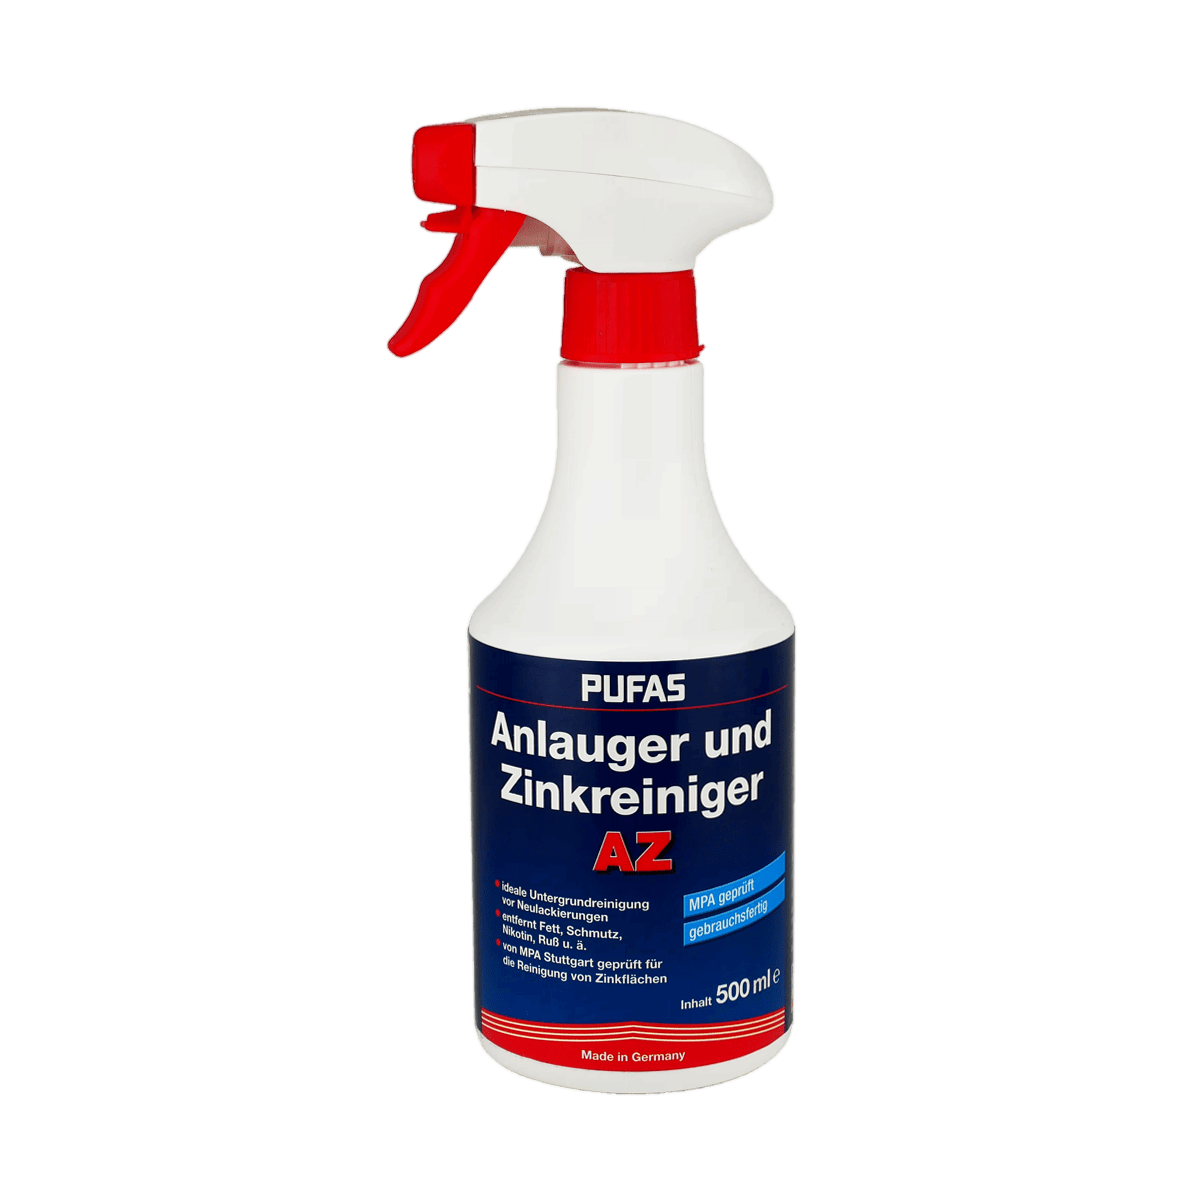 PUFAS Anlauger und Zinkreiniger AZ - Spray Spezialreinigungsmittel von pufas